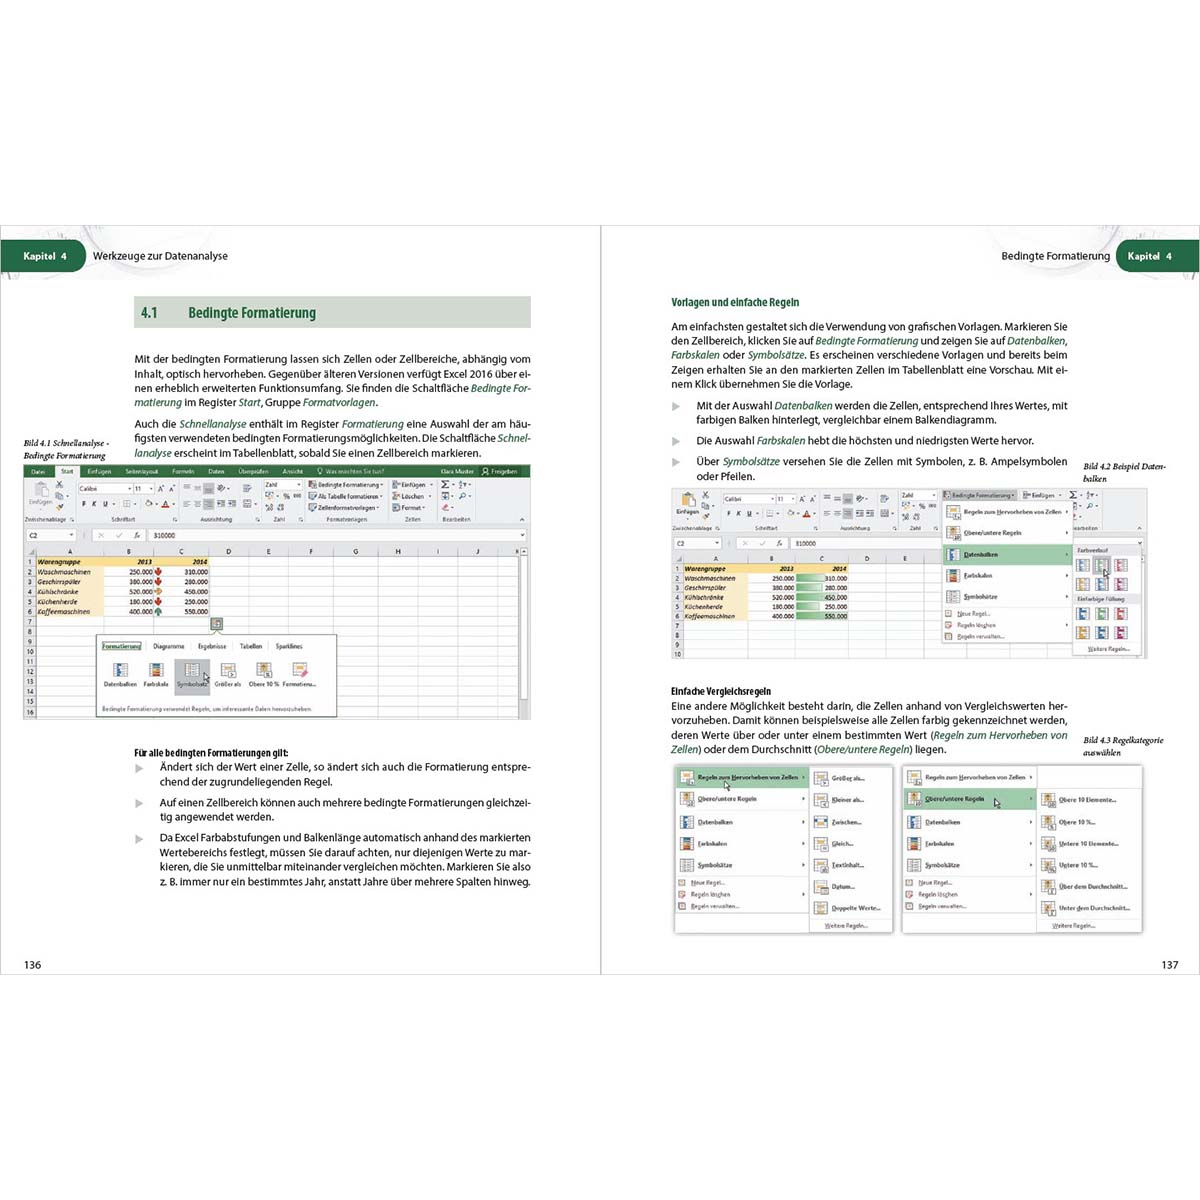 Excel 2016 Aufbauwissen - Profiwissen für Excel-Anwender